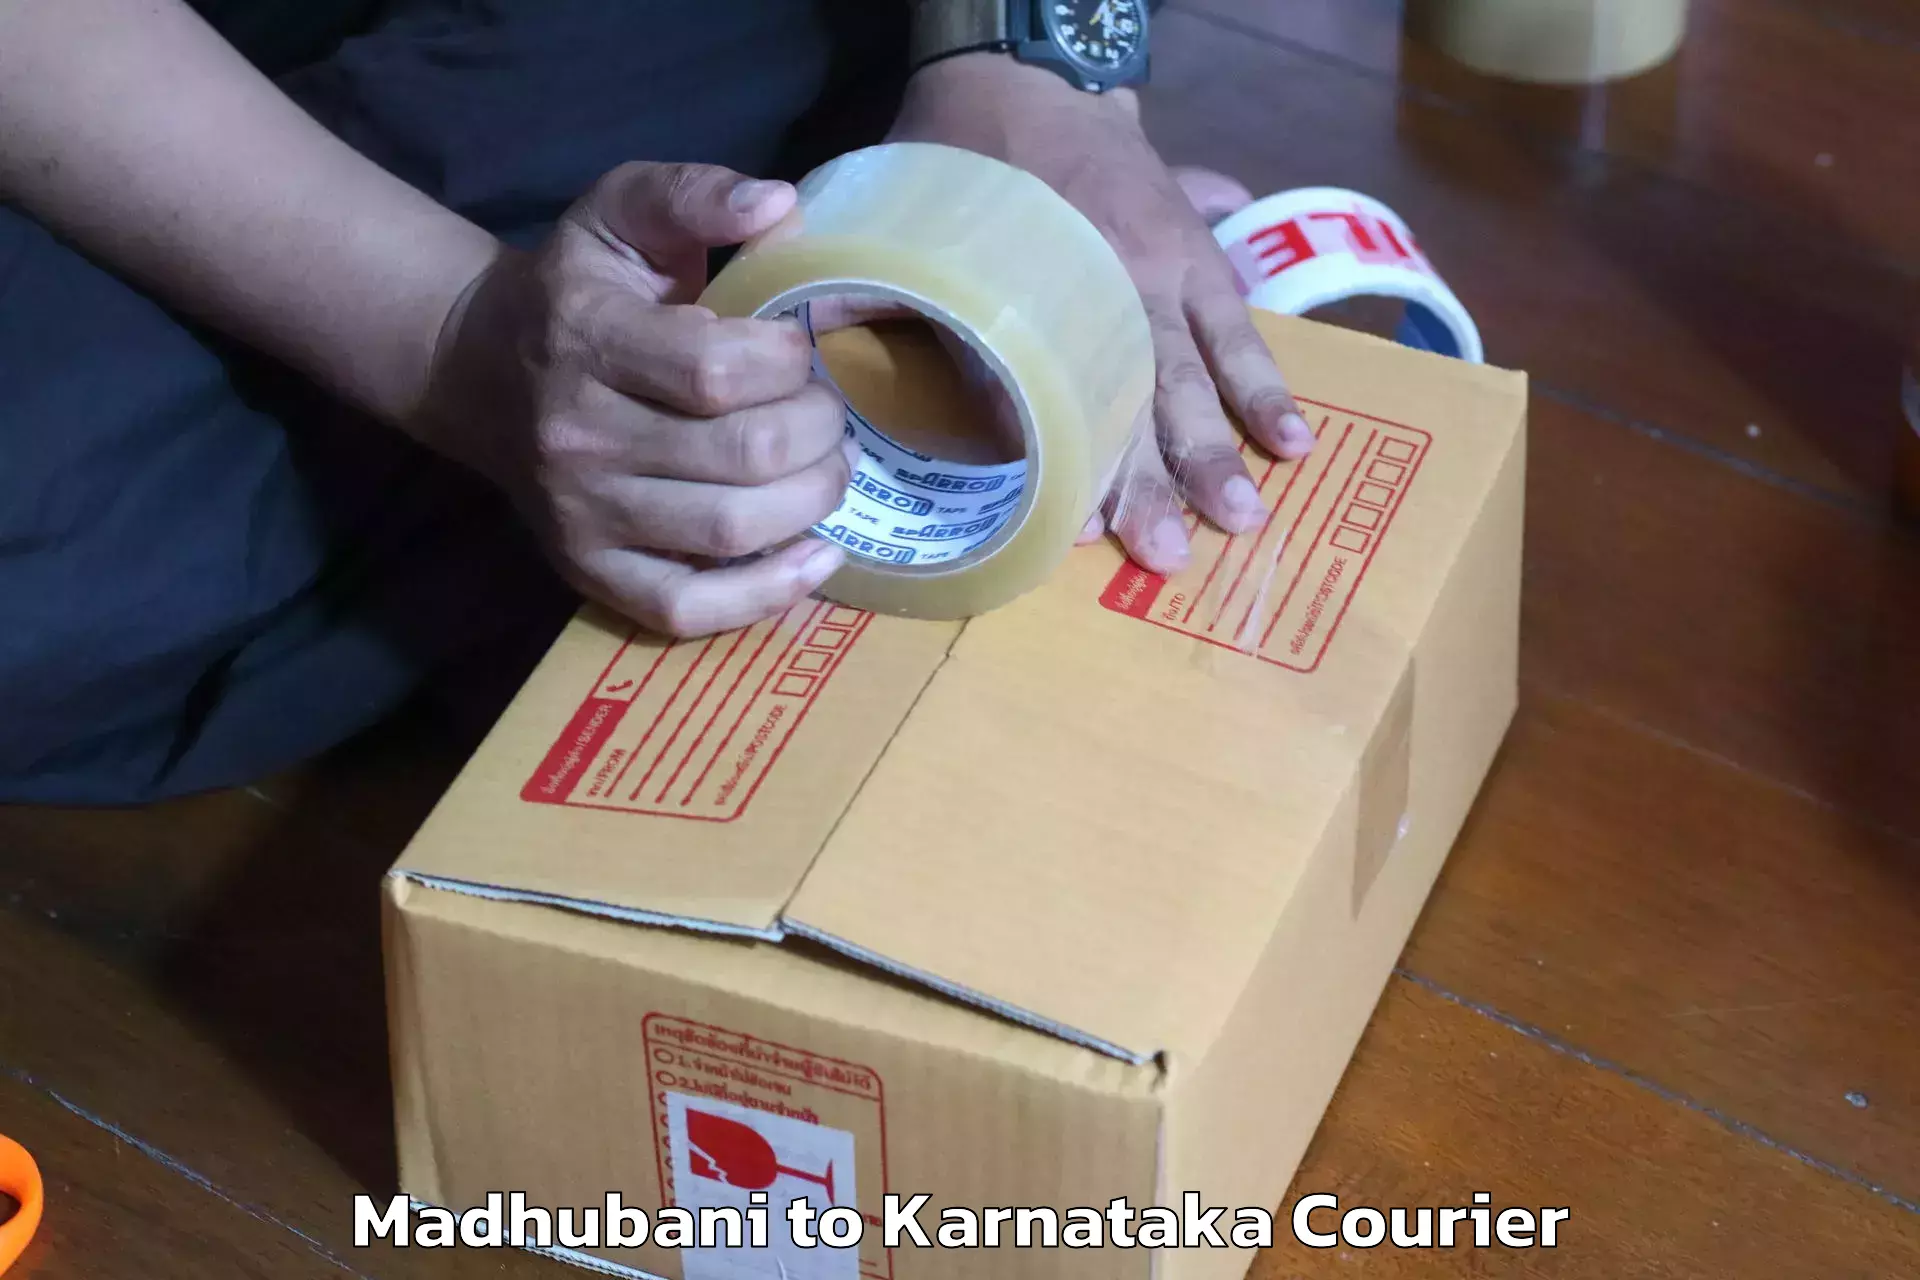 Furniture delivery service Madhubani to Yenepoya Mangalore